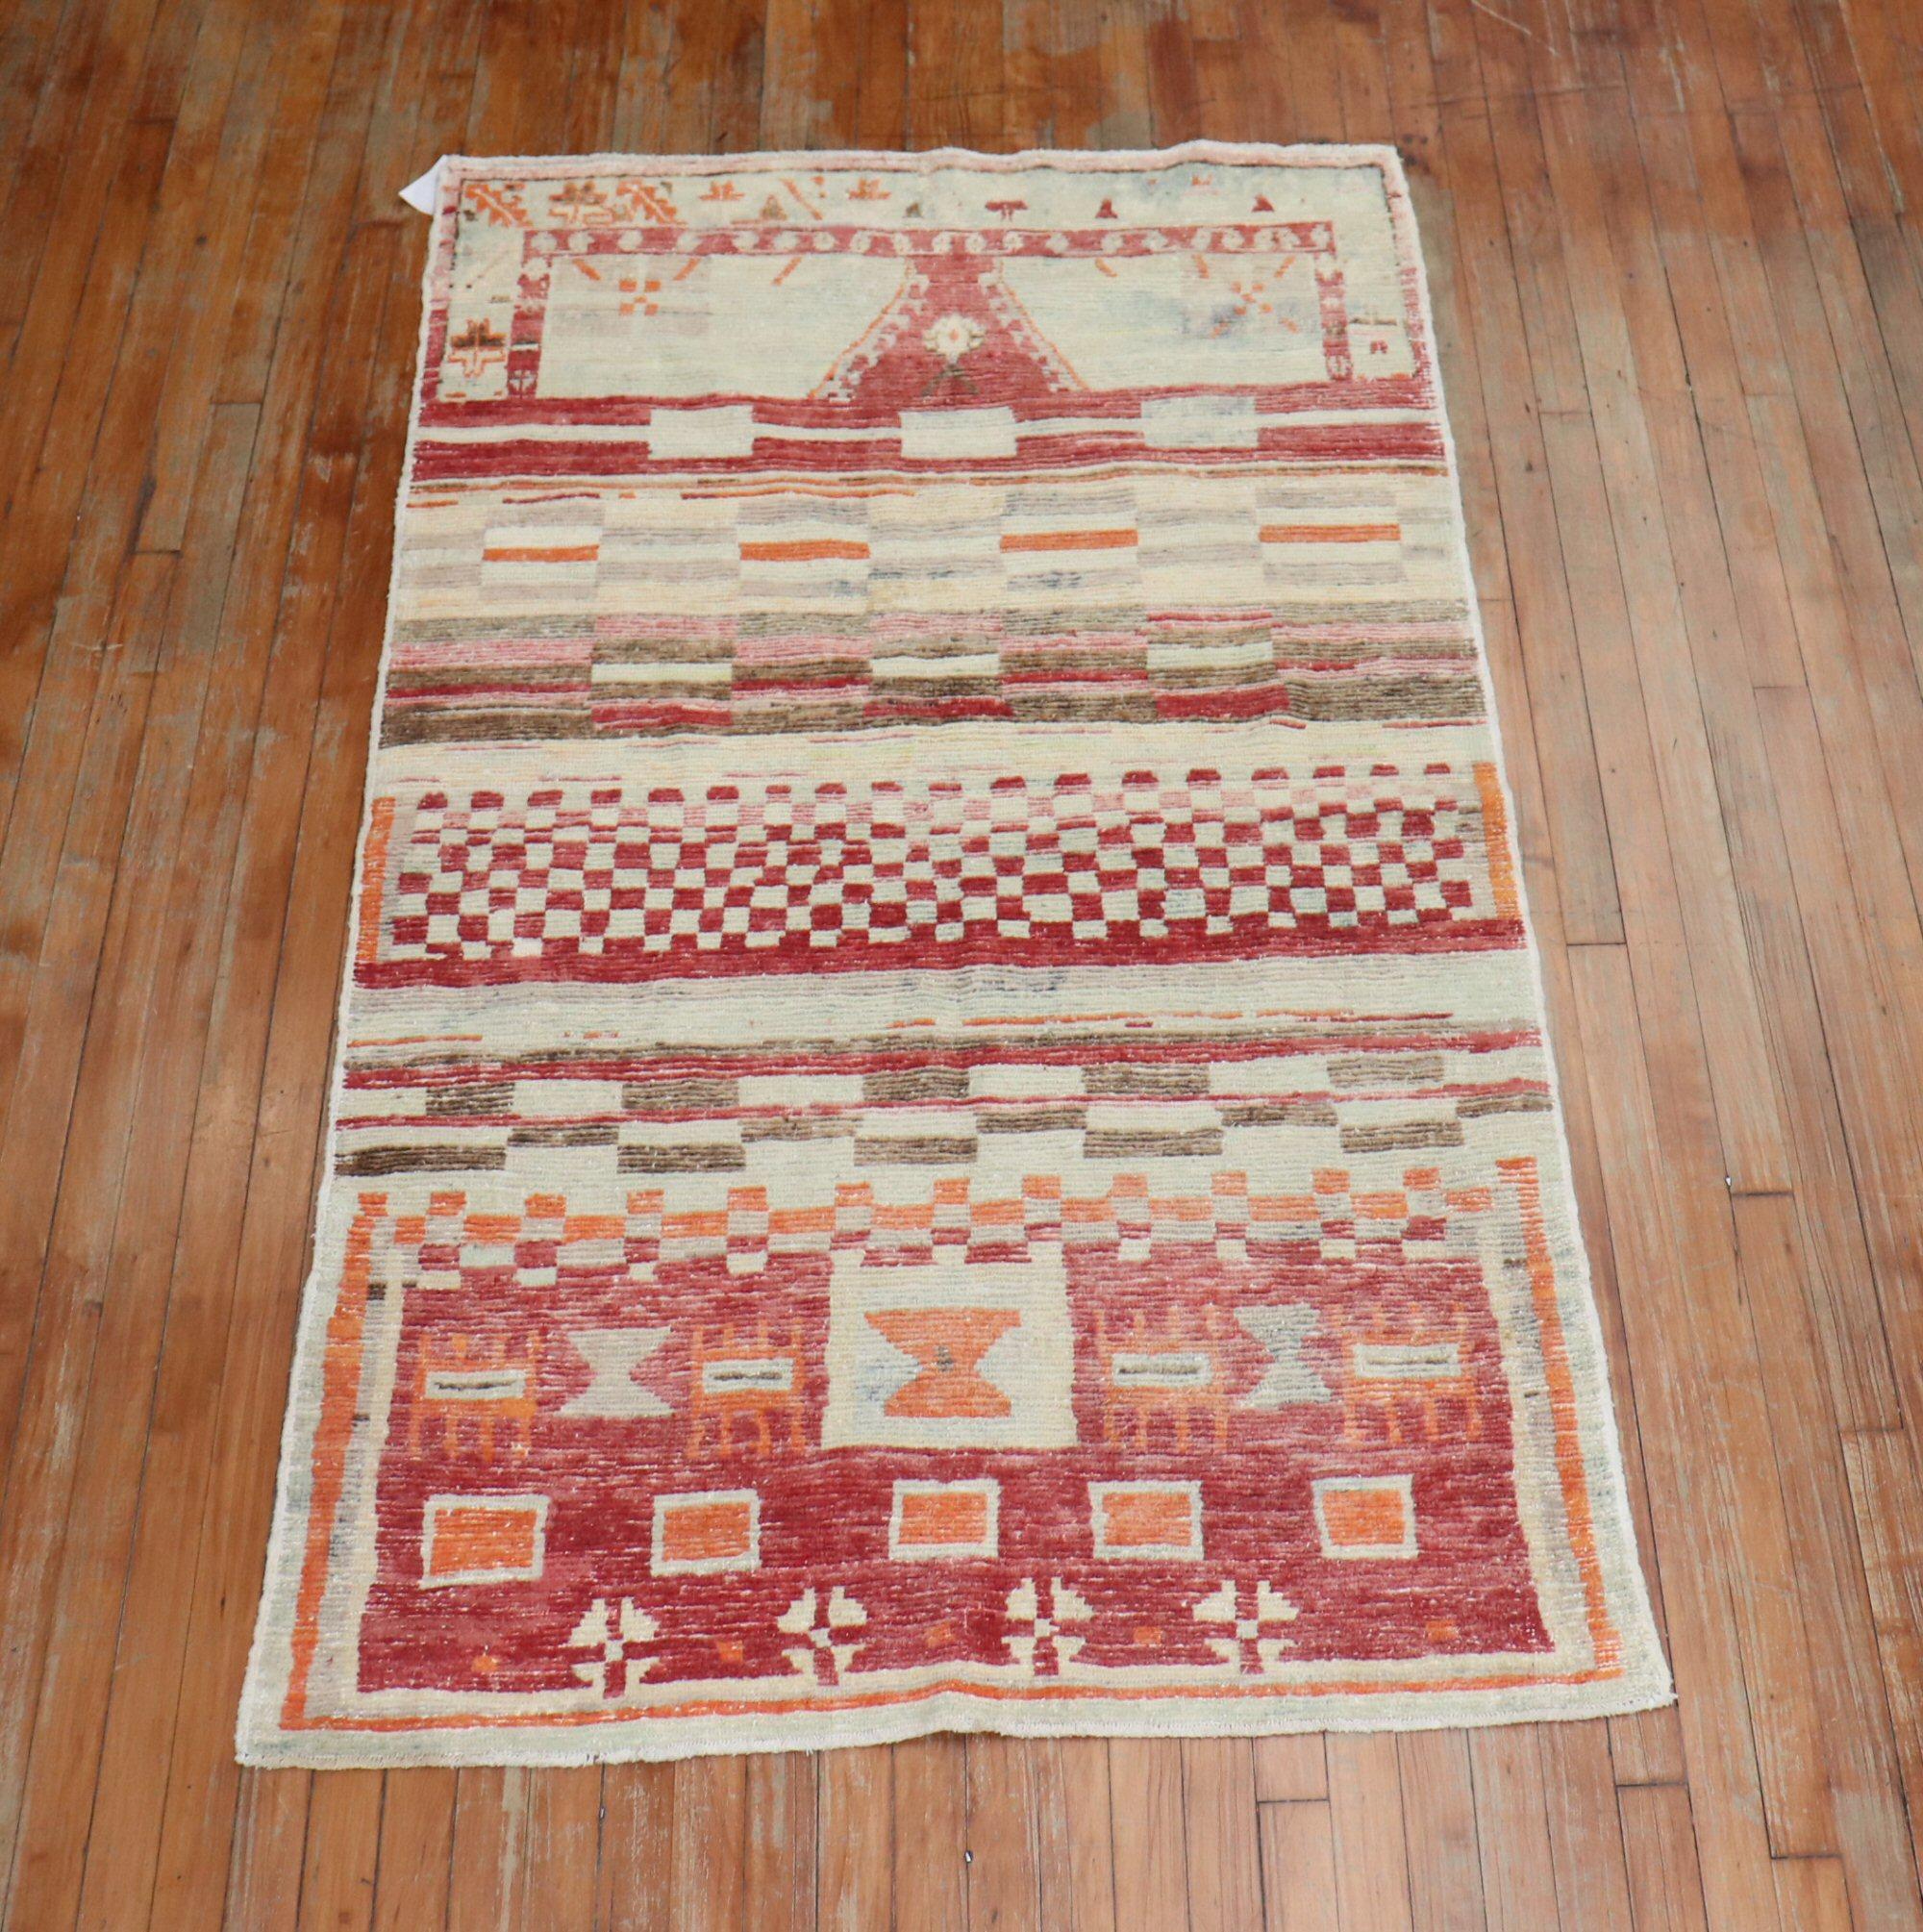 Un tapis turc anatolien abstrait du milieu du siècle avec un champ rouge brique avec des accents d'orange et de brun.

Taille : 3'8